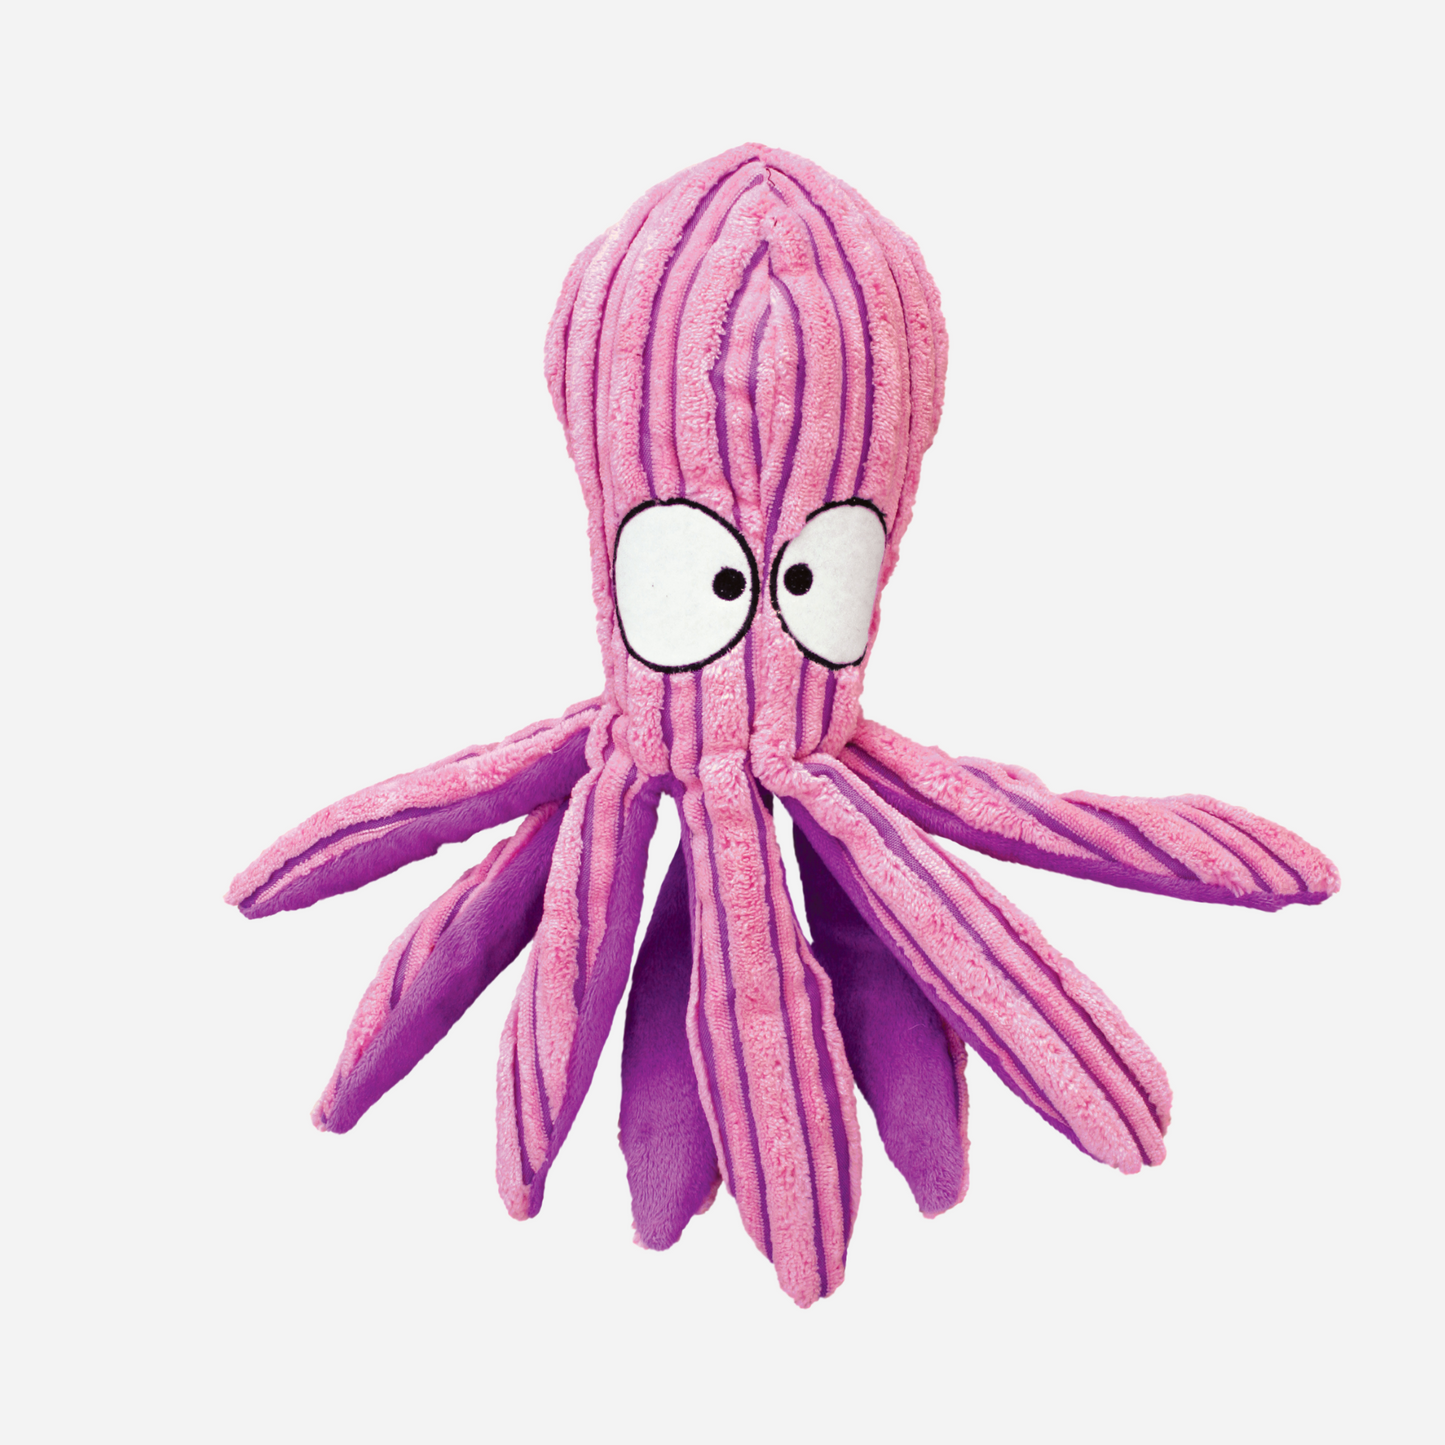 KONG Cuteseas Octopus